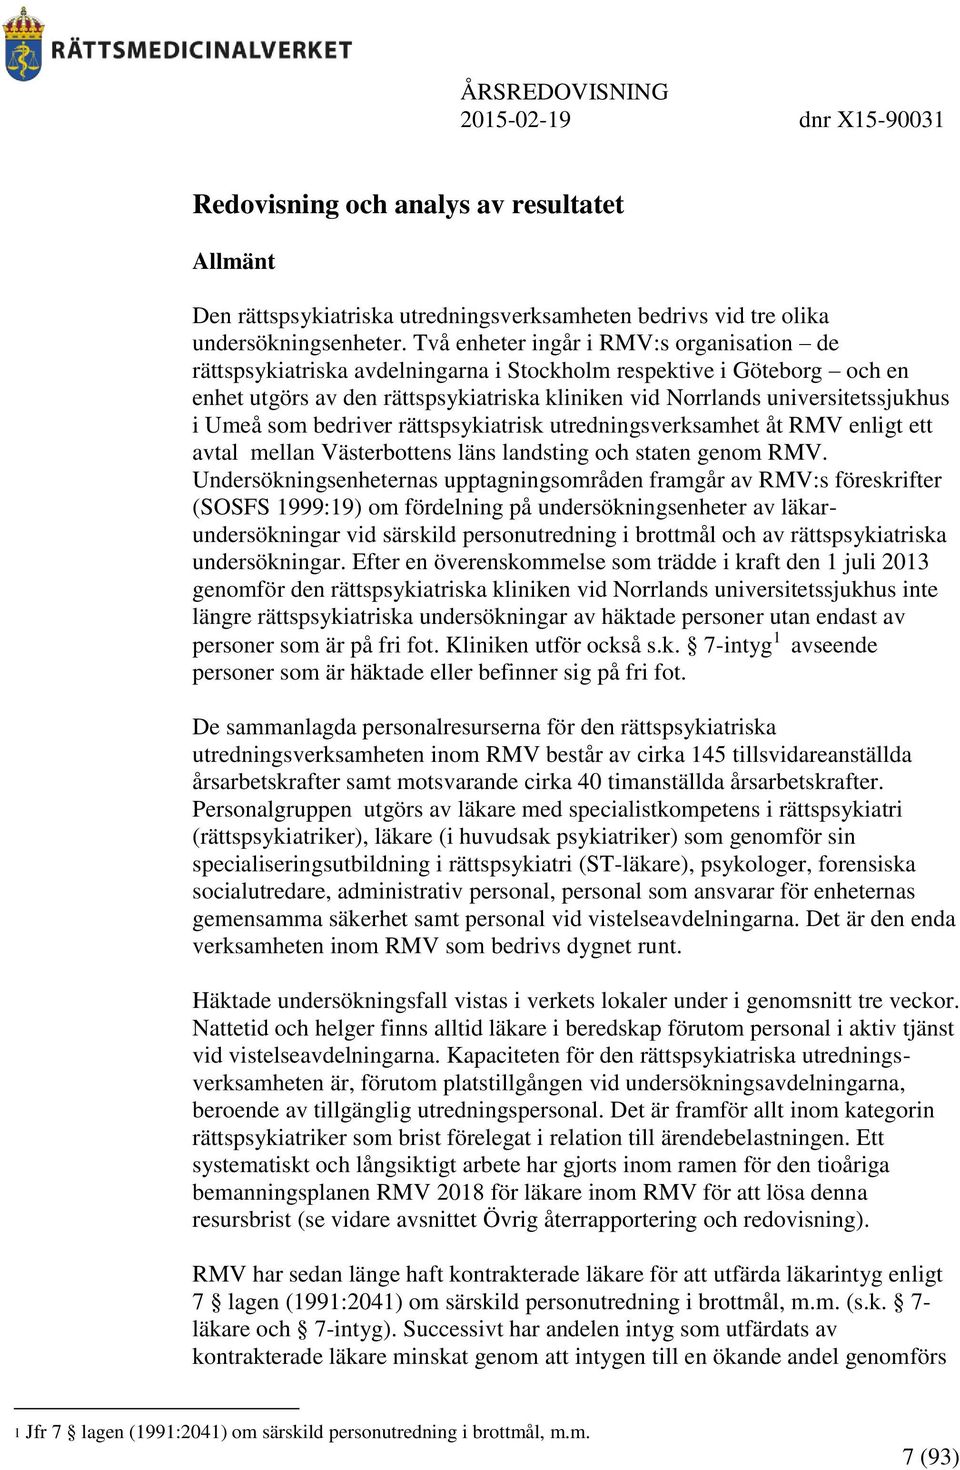 Umeå som bedriver rättspsykiatrisk utredningsverksamhet åt RMV enligt ett avtal mellan Västerbottens läns landsting och staten genom RMV.